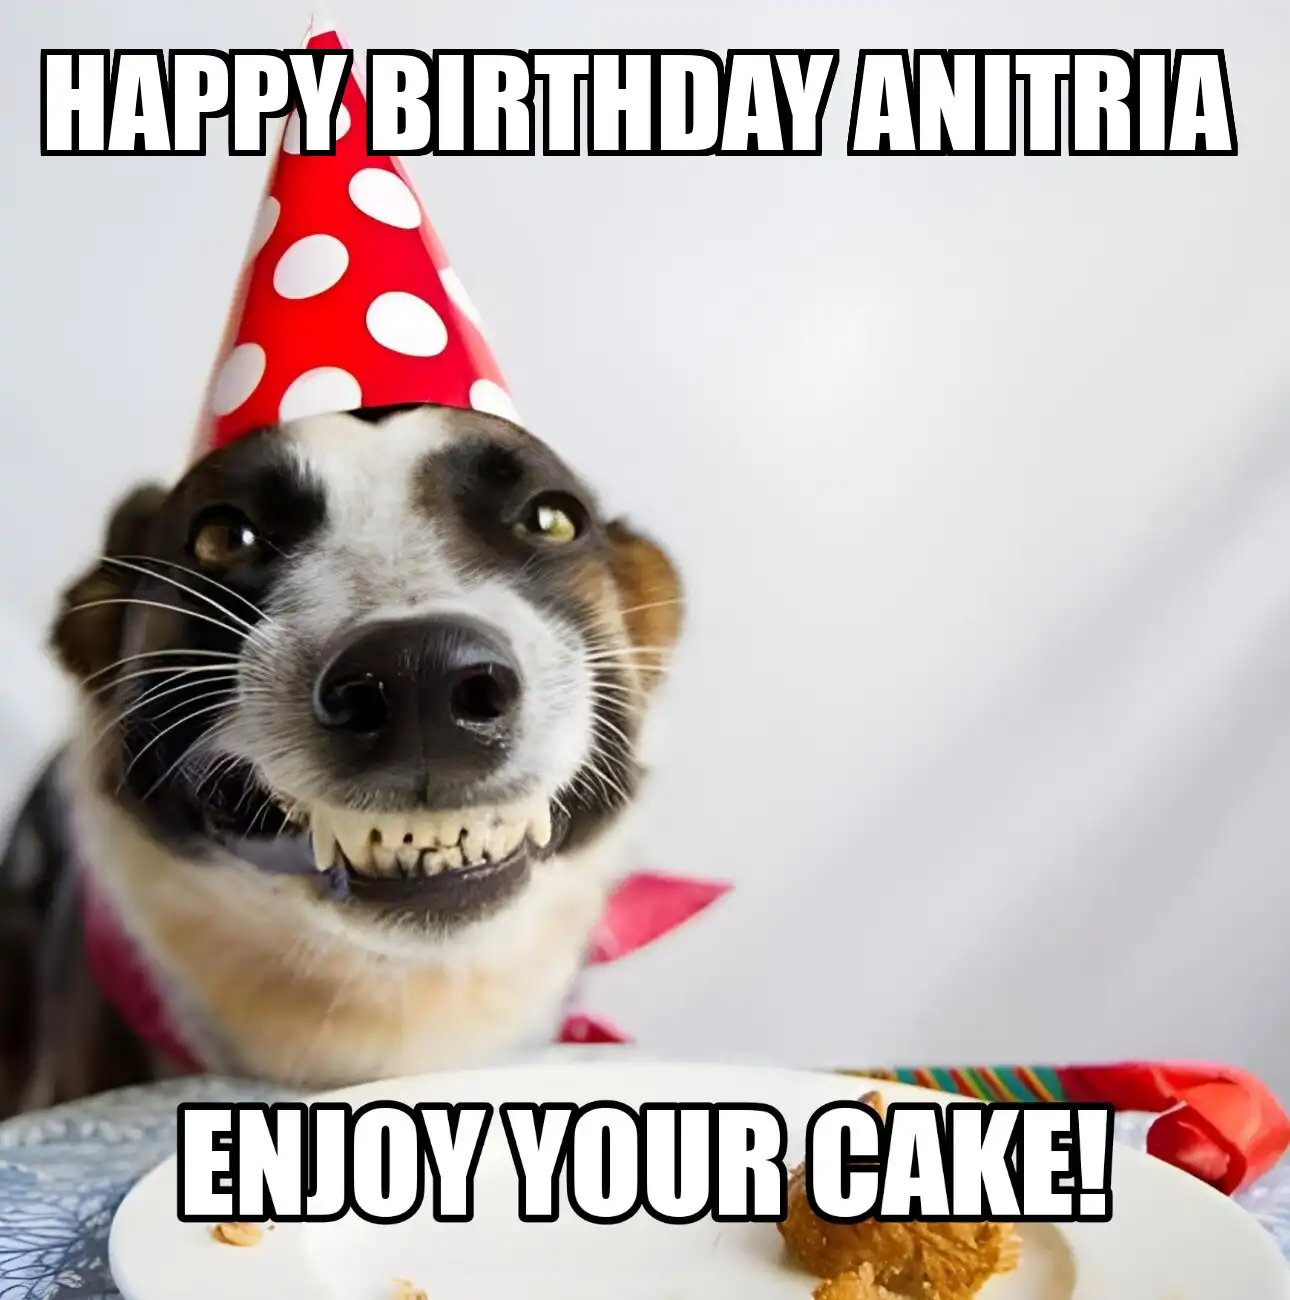 Happy Birthday Anitria Enjoy Your Cake Dog Meme